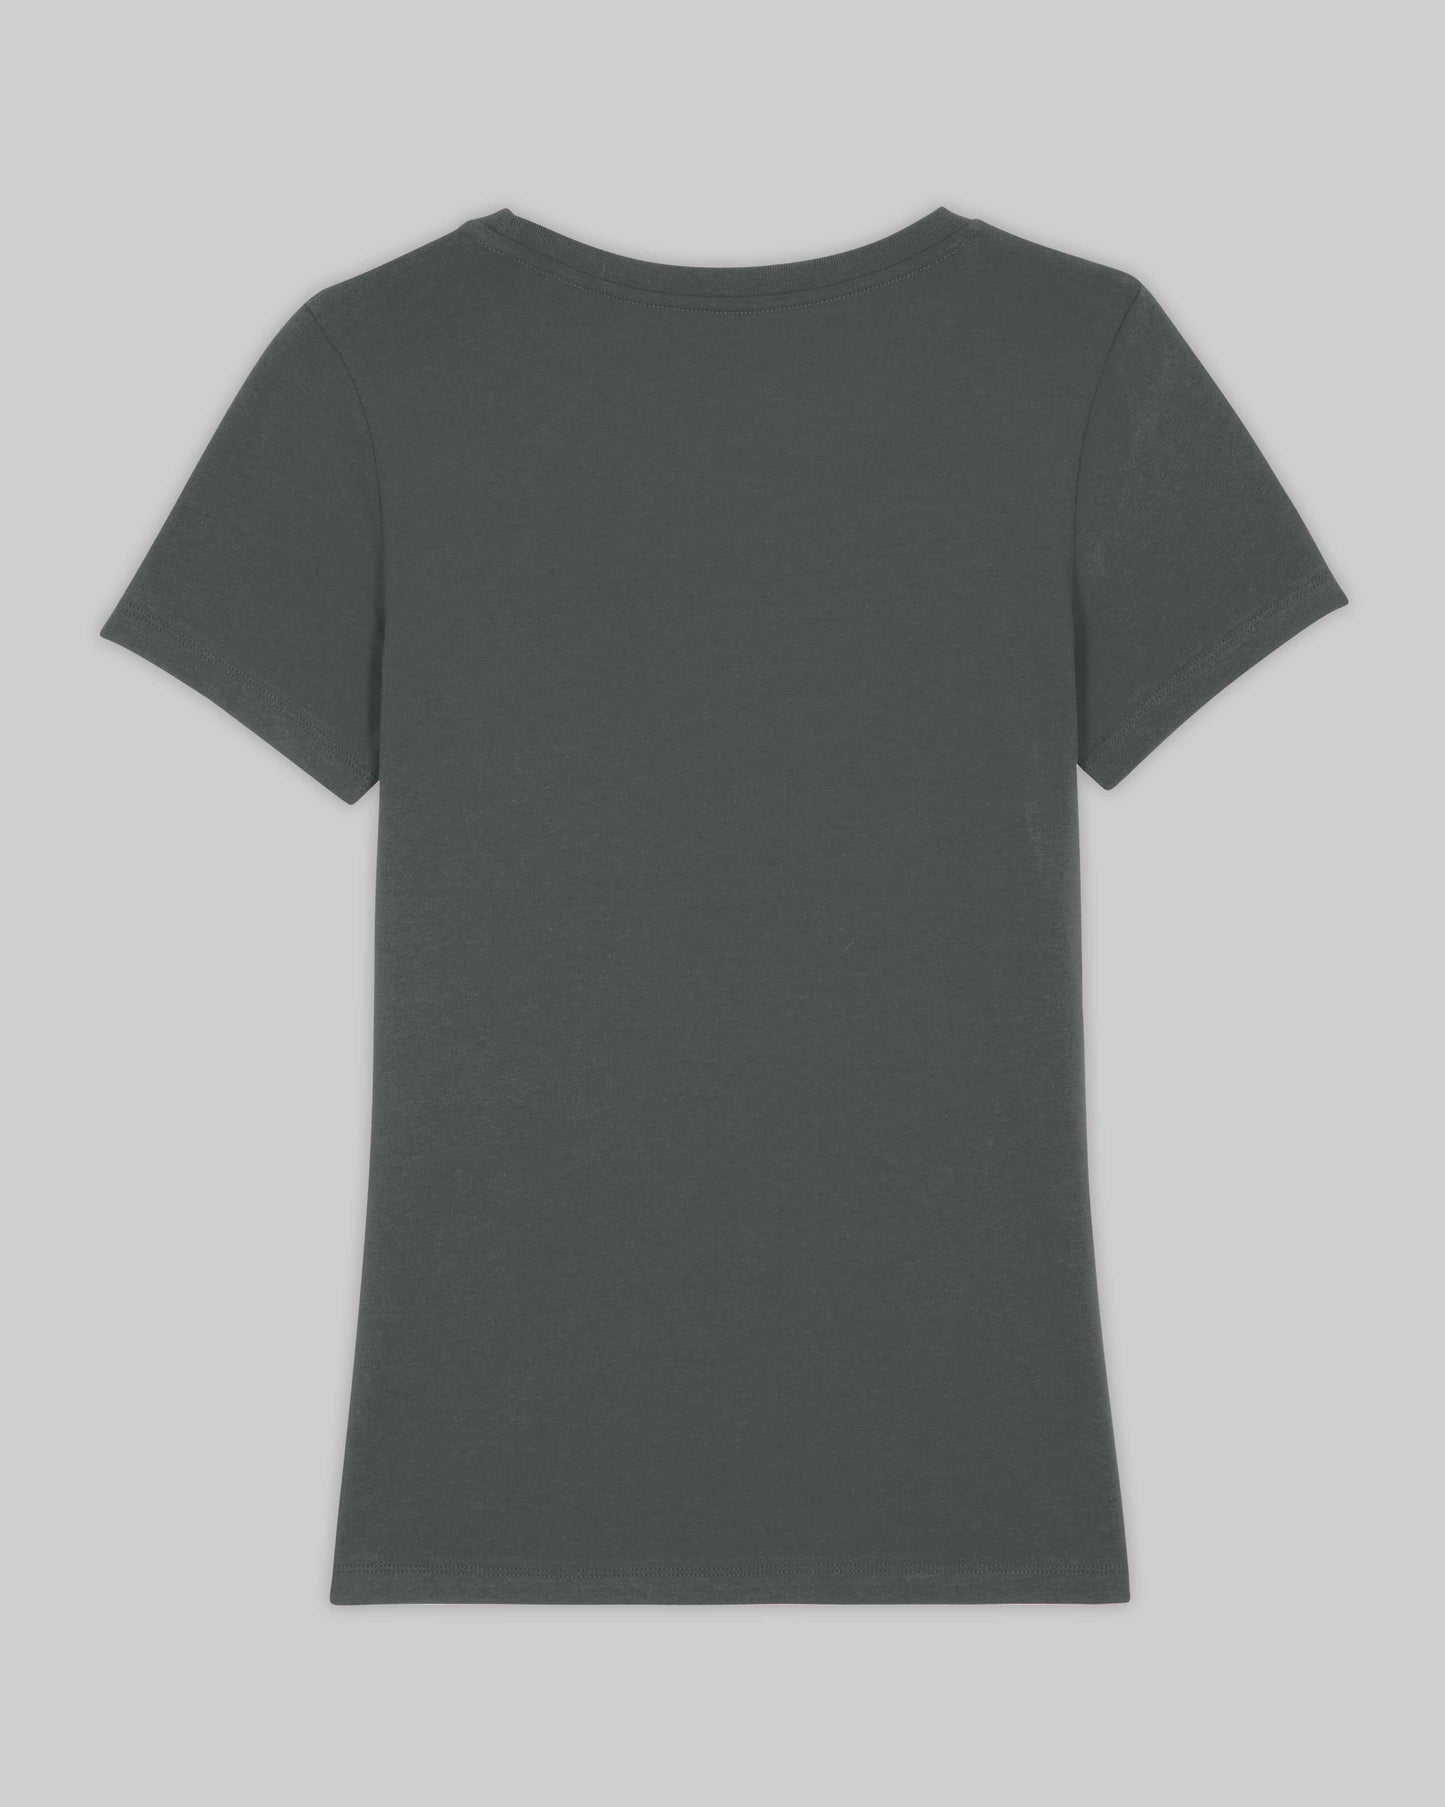 EINHORST® Organic Shirt tailliert in "Anthracite" mit dem Motiv "s-ally Regenbogen" in der Kombination schwarzer Regenbogen mit schwarzer Schrift, Bild von Shirt von hinten